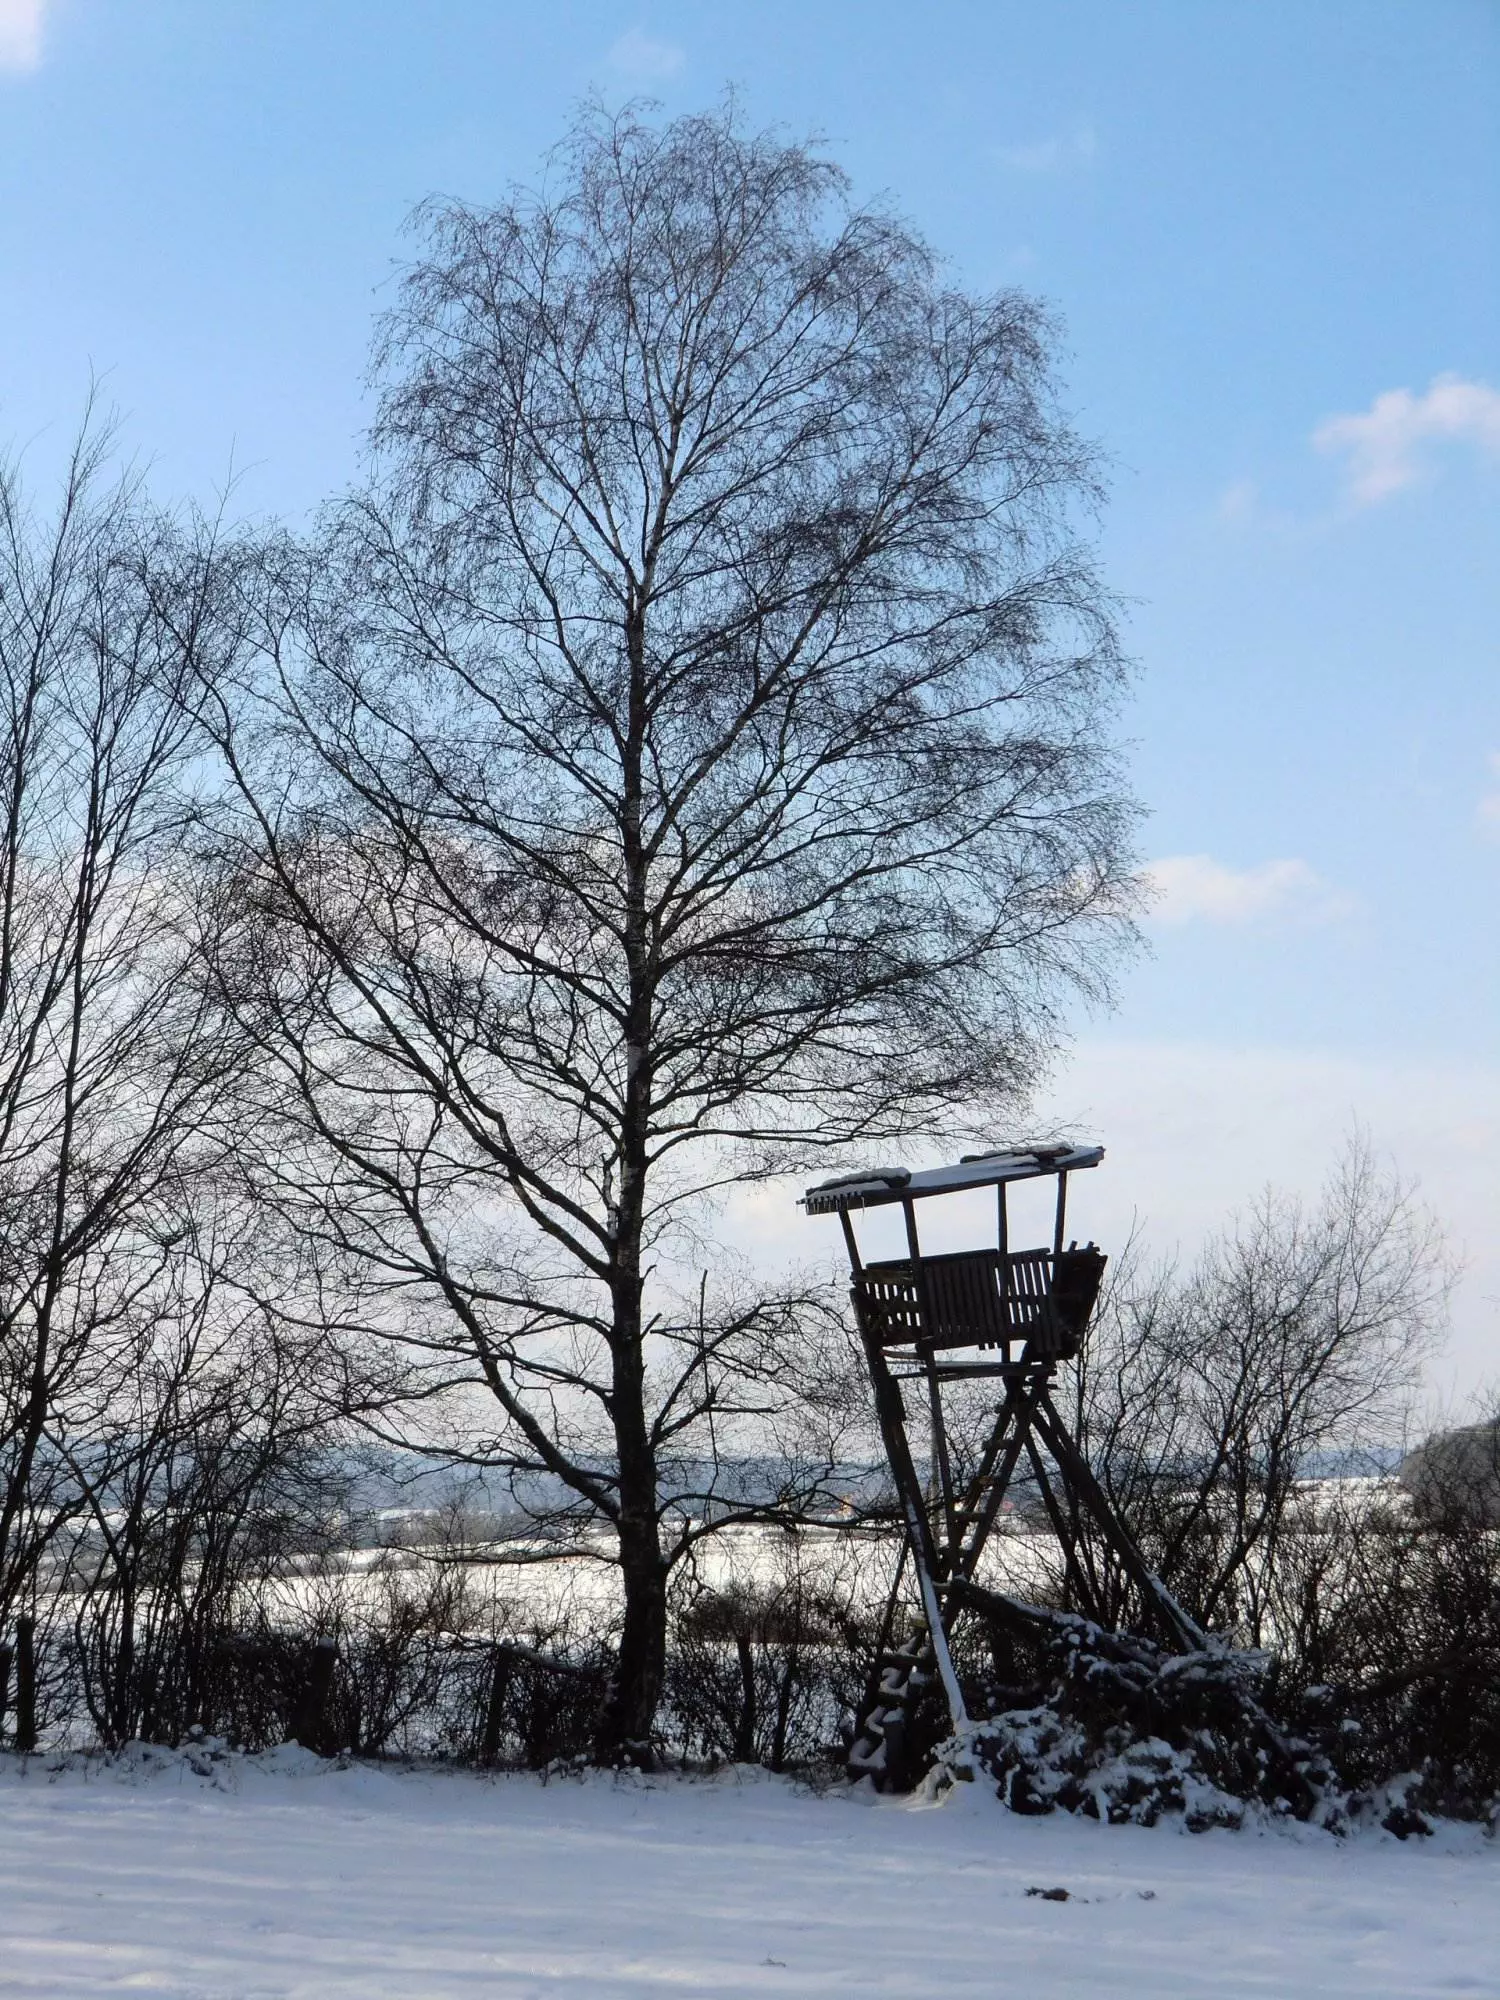 Ein einzelner Baum in einem schneebedeckten Feld.